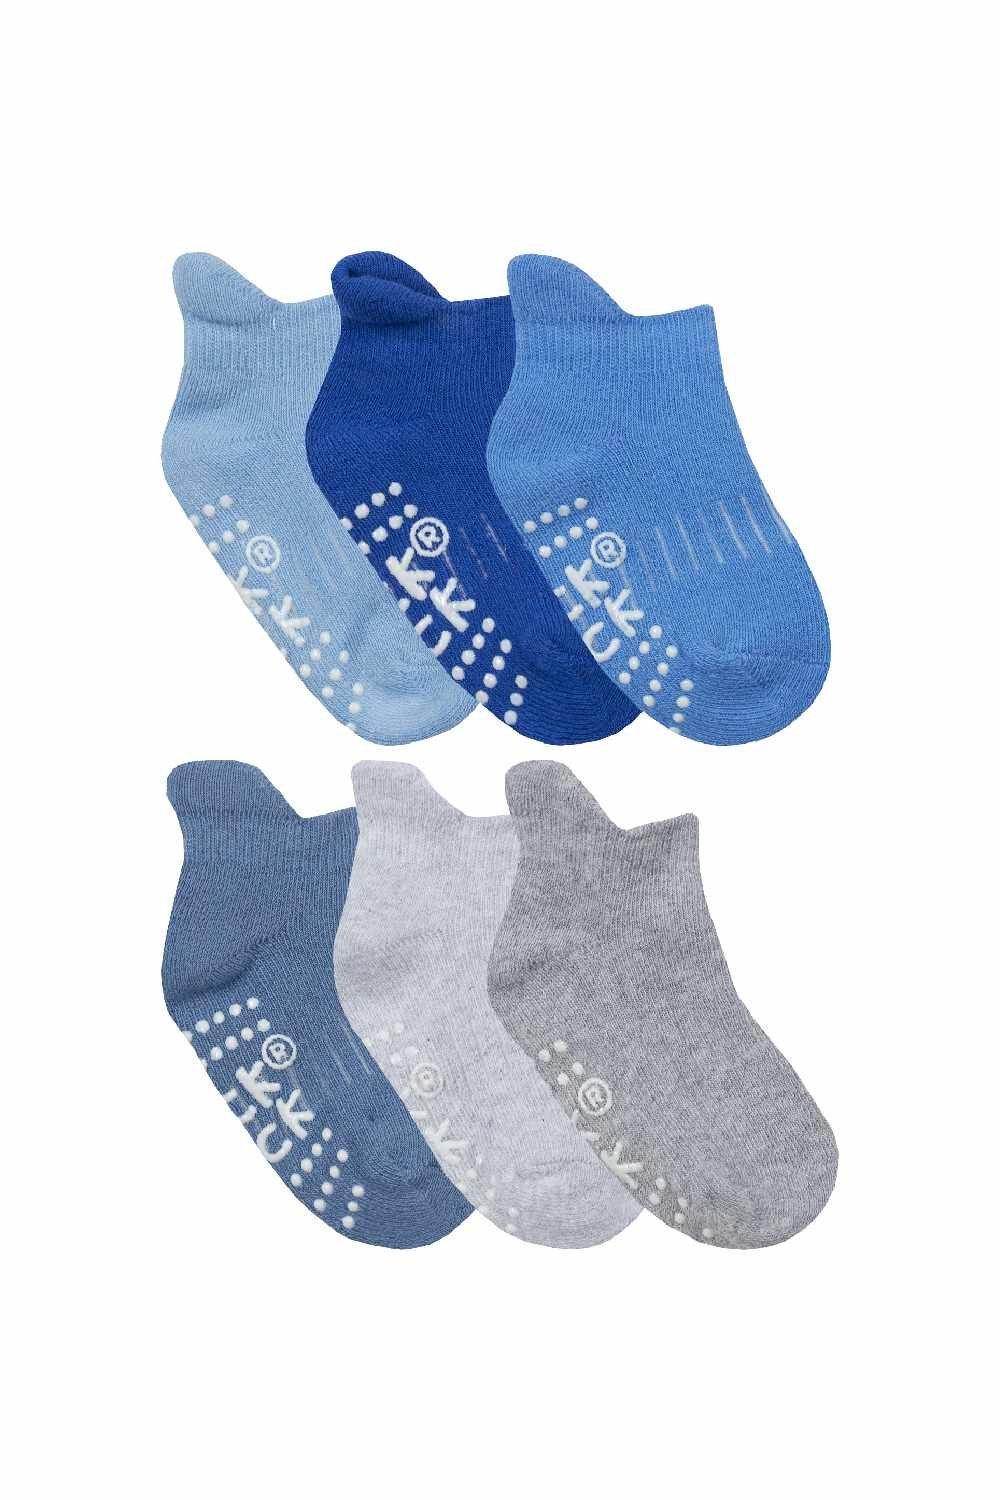 12 пар детских нескользящих хлопковых носков с захватами для тренировок по щиколотку Sock Snob, синий